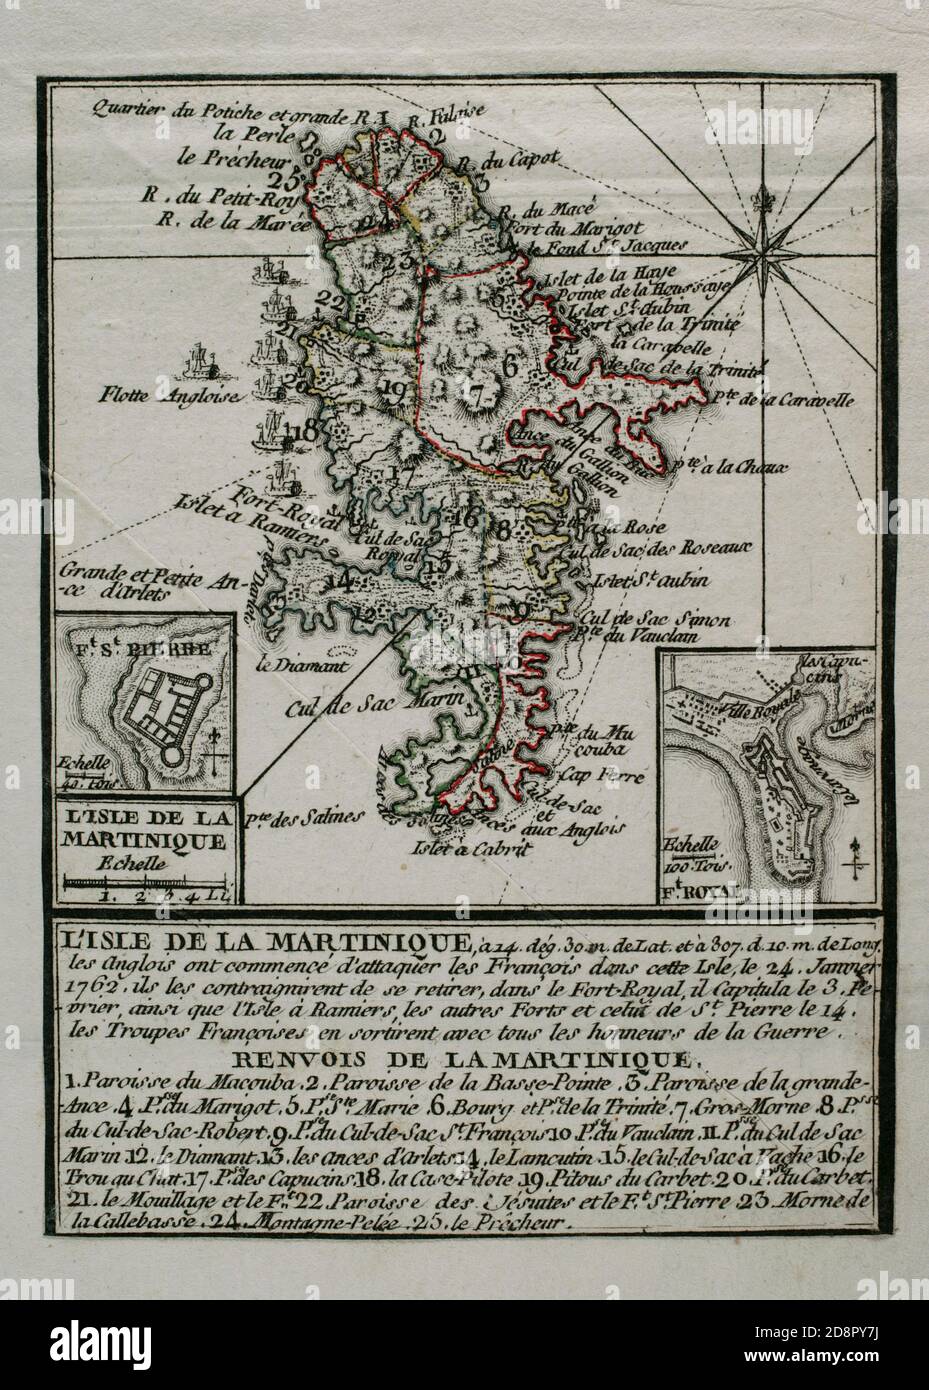 Isla de la Martinica (Antillas Menores). Los británicos conquistaron la isla durante la Guerra de los Siete Años, manteniéndola en su poder los años 1762-1763. Los ingleses comenzaron a atacar a los franceses en la isla el 24 de enero de 1762, obligándoles a retirarse hacia la capital, Fort-Royal, capitulando el 3 de febrero. El 12 de febrero toda la isla habia sido ya controlada por los británicos. Grabado publicado en 1765 por el cartógrafo Jean de Beaurain (1696-1771) como ilustración de su Gran mapa de Alemania, con los eventos que tuvieron lugar durante la Guerra de los Siete Años. Guerra Stock Photo